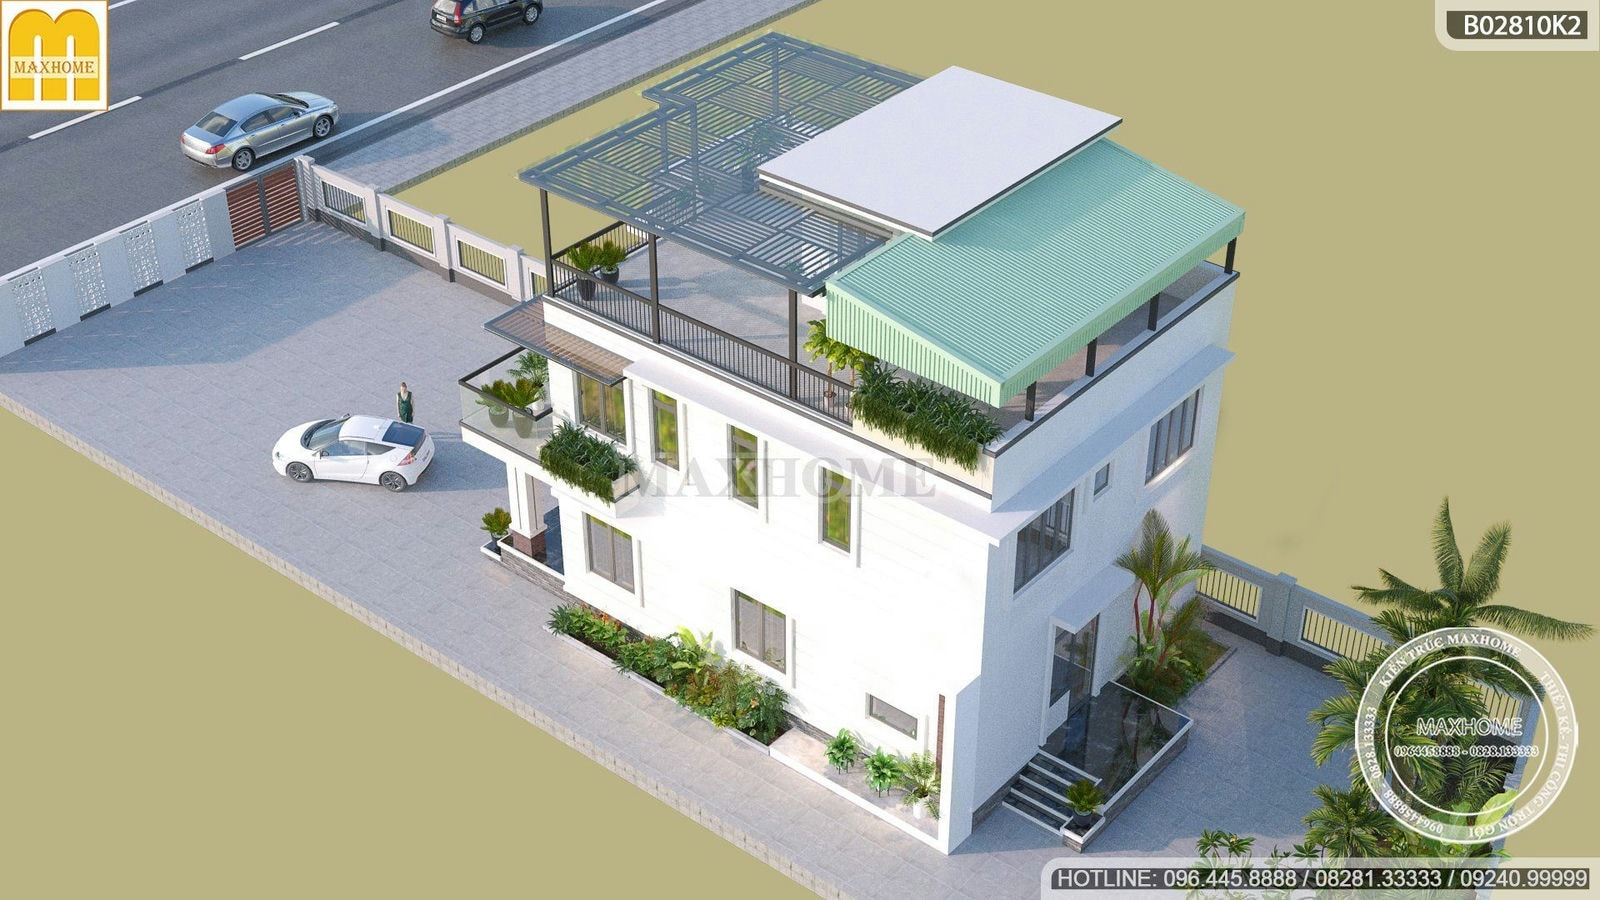 Mẫu thiết kế nhà mái bằng 3 tầng mặt tiền 8m hiện đại ở Lạng Sơn | MH01357